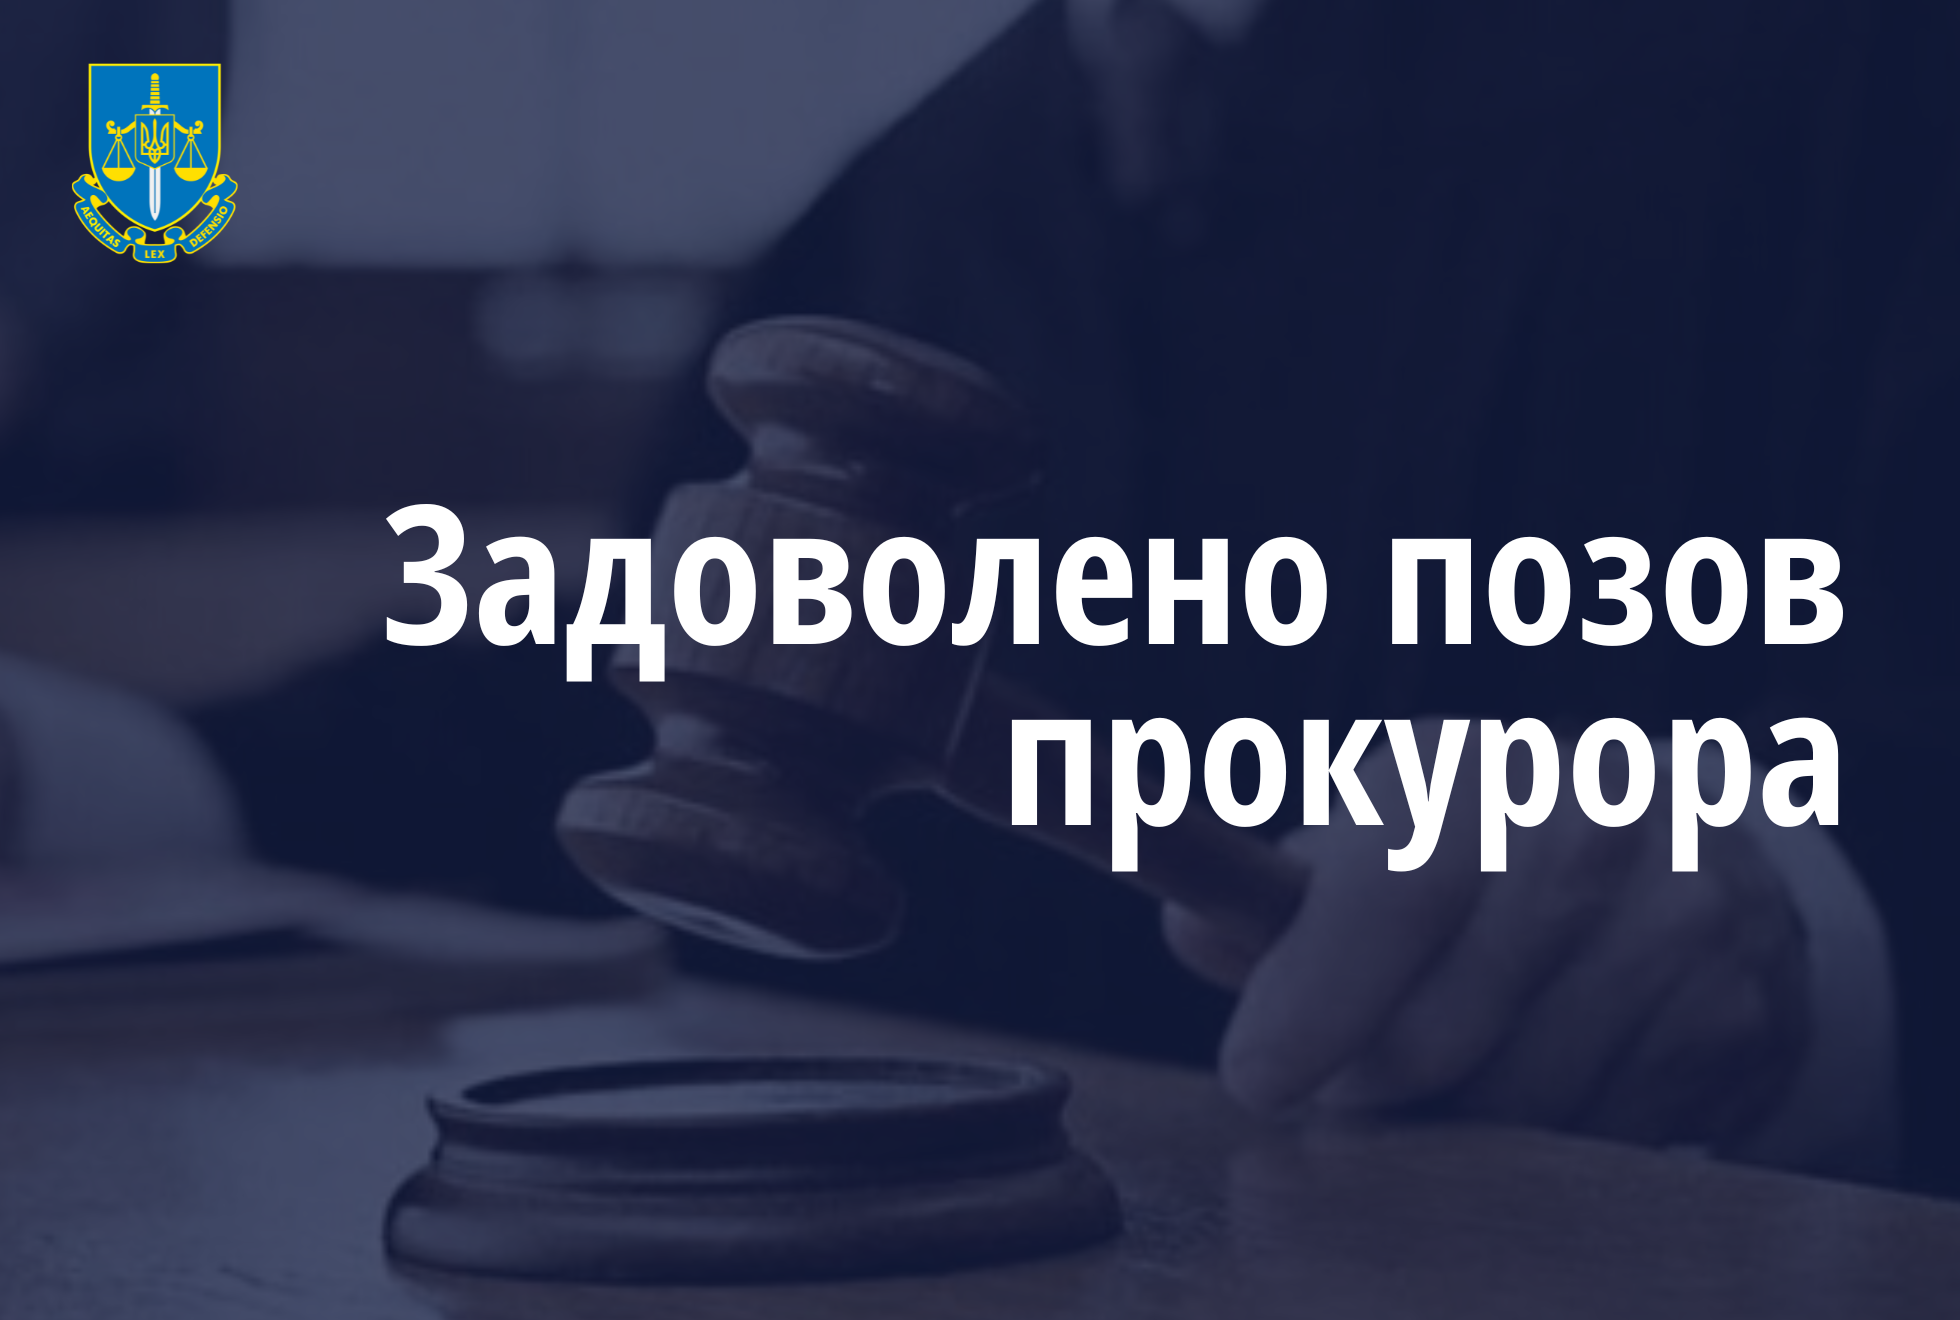 Прокуратура Луганщини у судовому порядку стягнула з недобросовісного постачальника на користь держави понад 2 млн грн